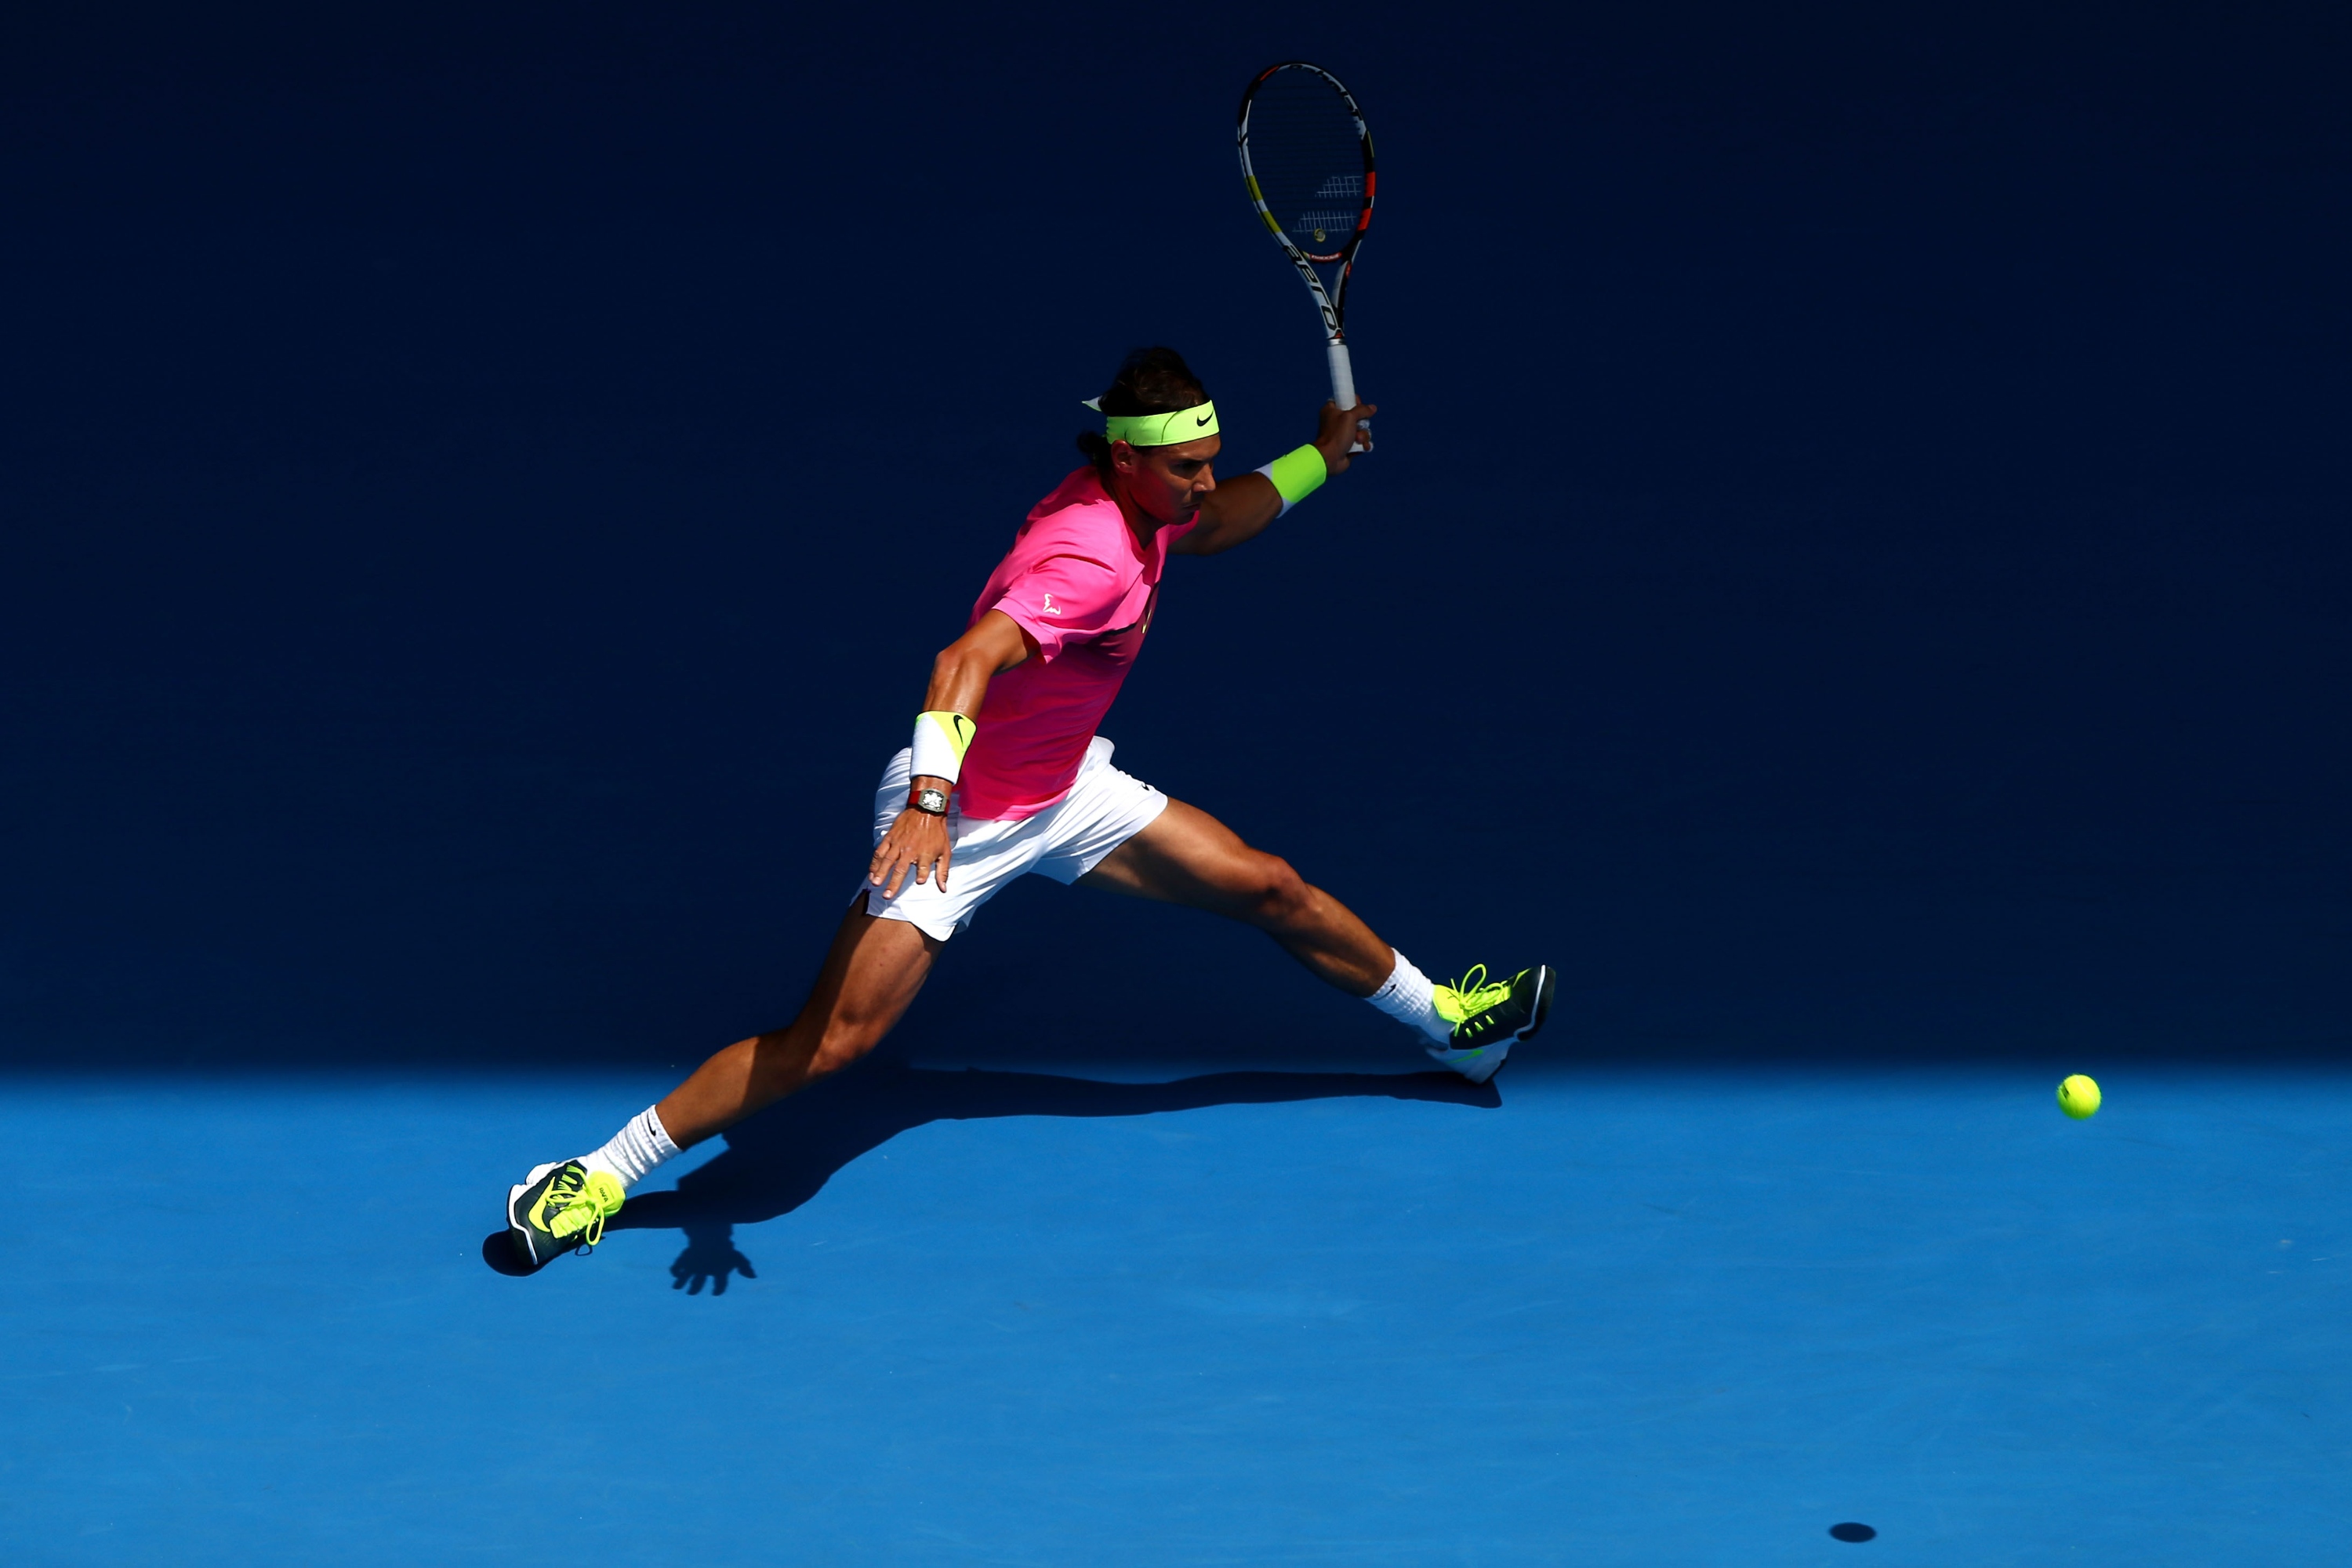 Rafael Nadal vs Mikhail Youzhny Open de Australia 2015 Pict. 13